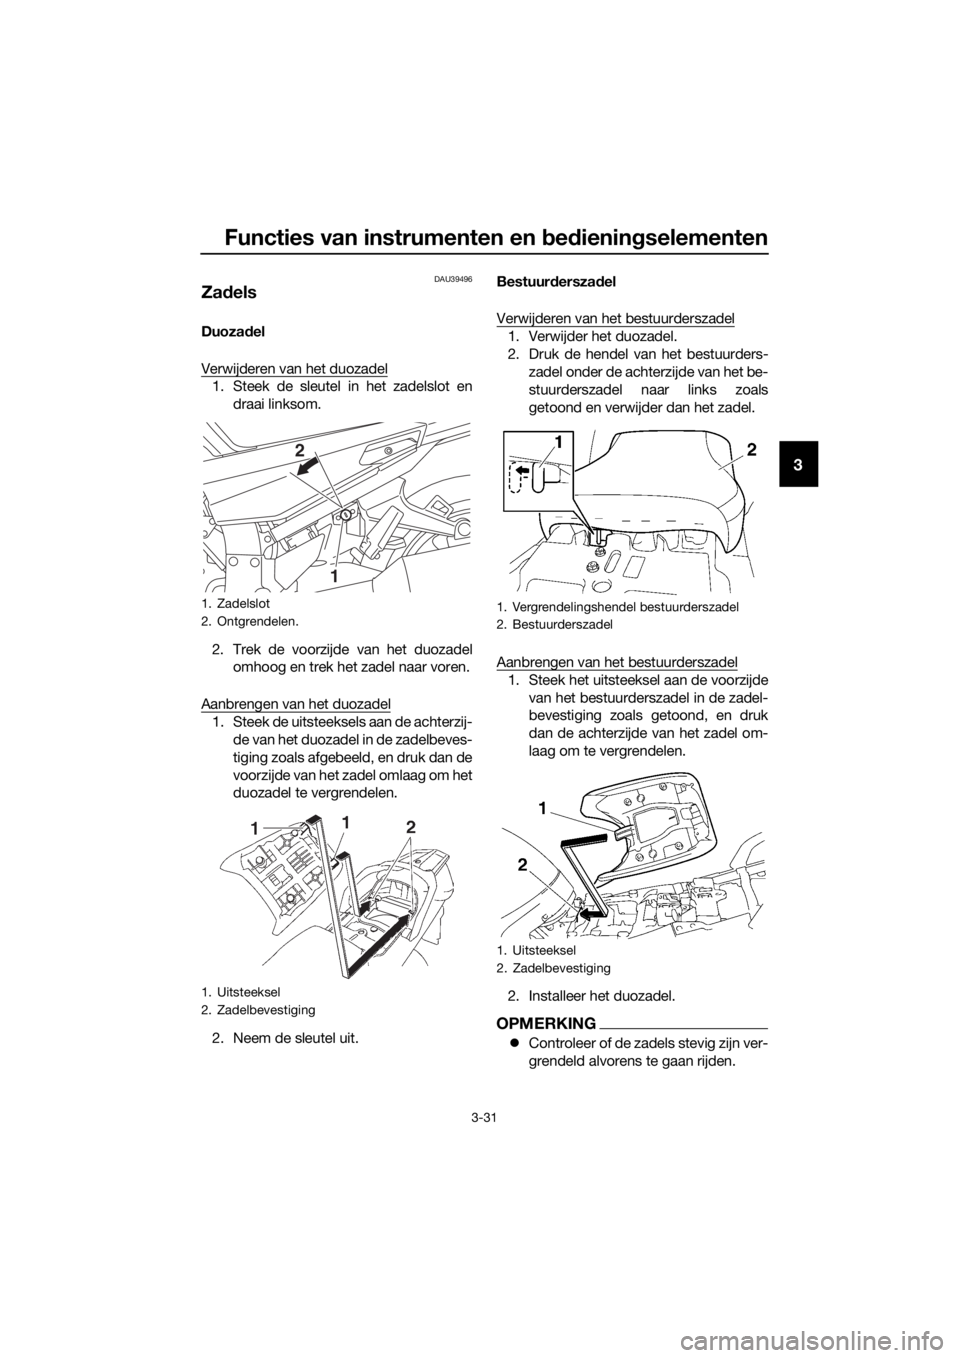 YAMAHA FJR1300A 2018  Instructieboekje (in Dutch) Functies van instrumenten en bed ienin gselementen
3-31
3
DAU39496
Za dels
Duoza del
Verwijderen van het duozadel
1. Steek de sleutel in het zadelslot en draai linksom.
2. Trek de voorzijde van het du